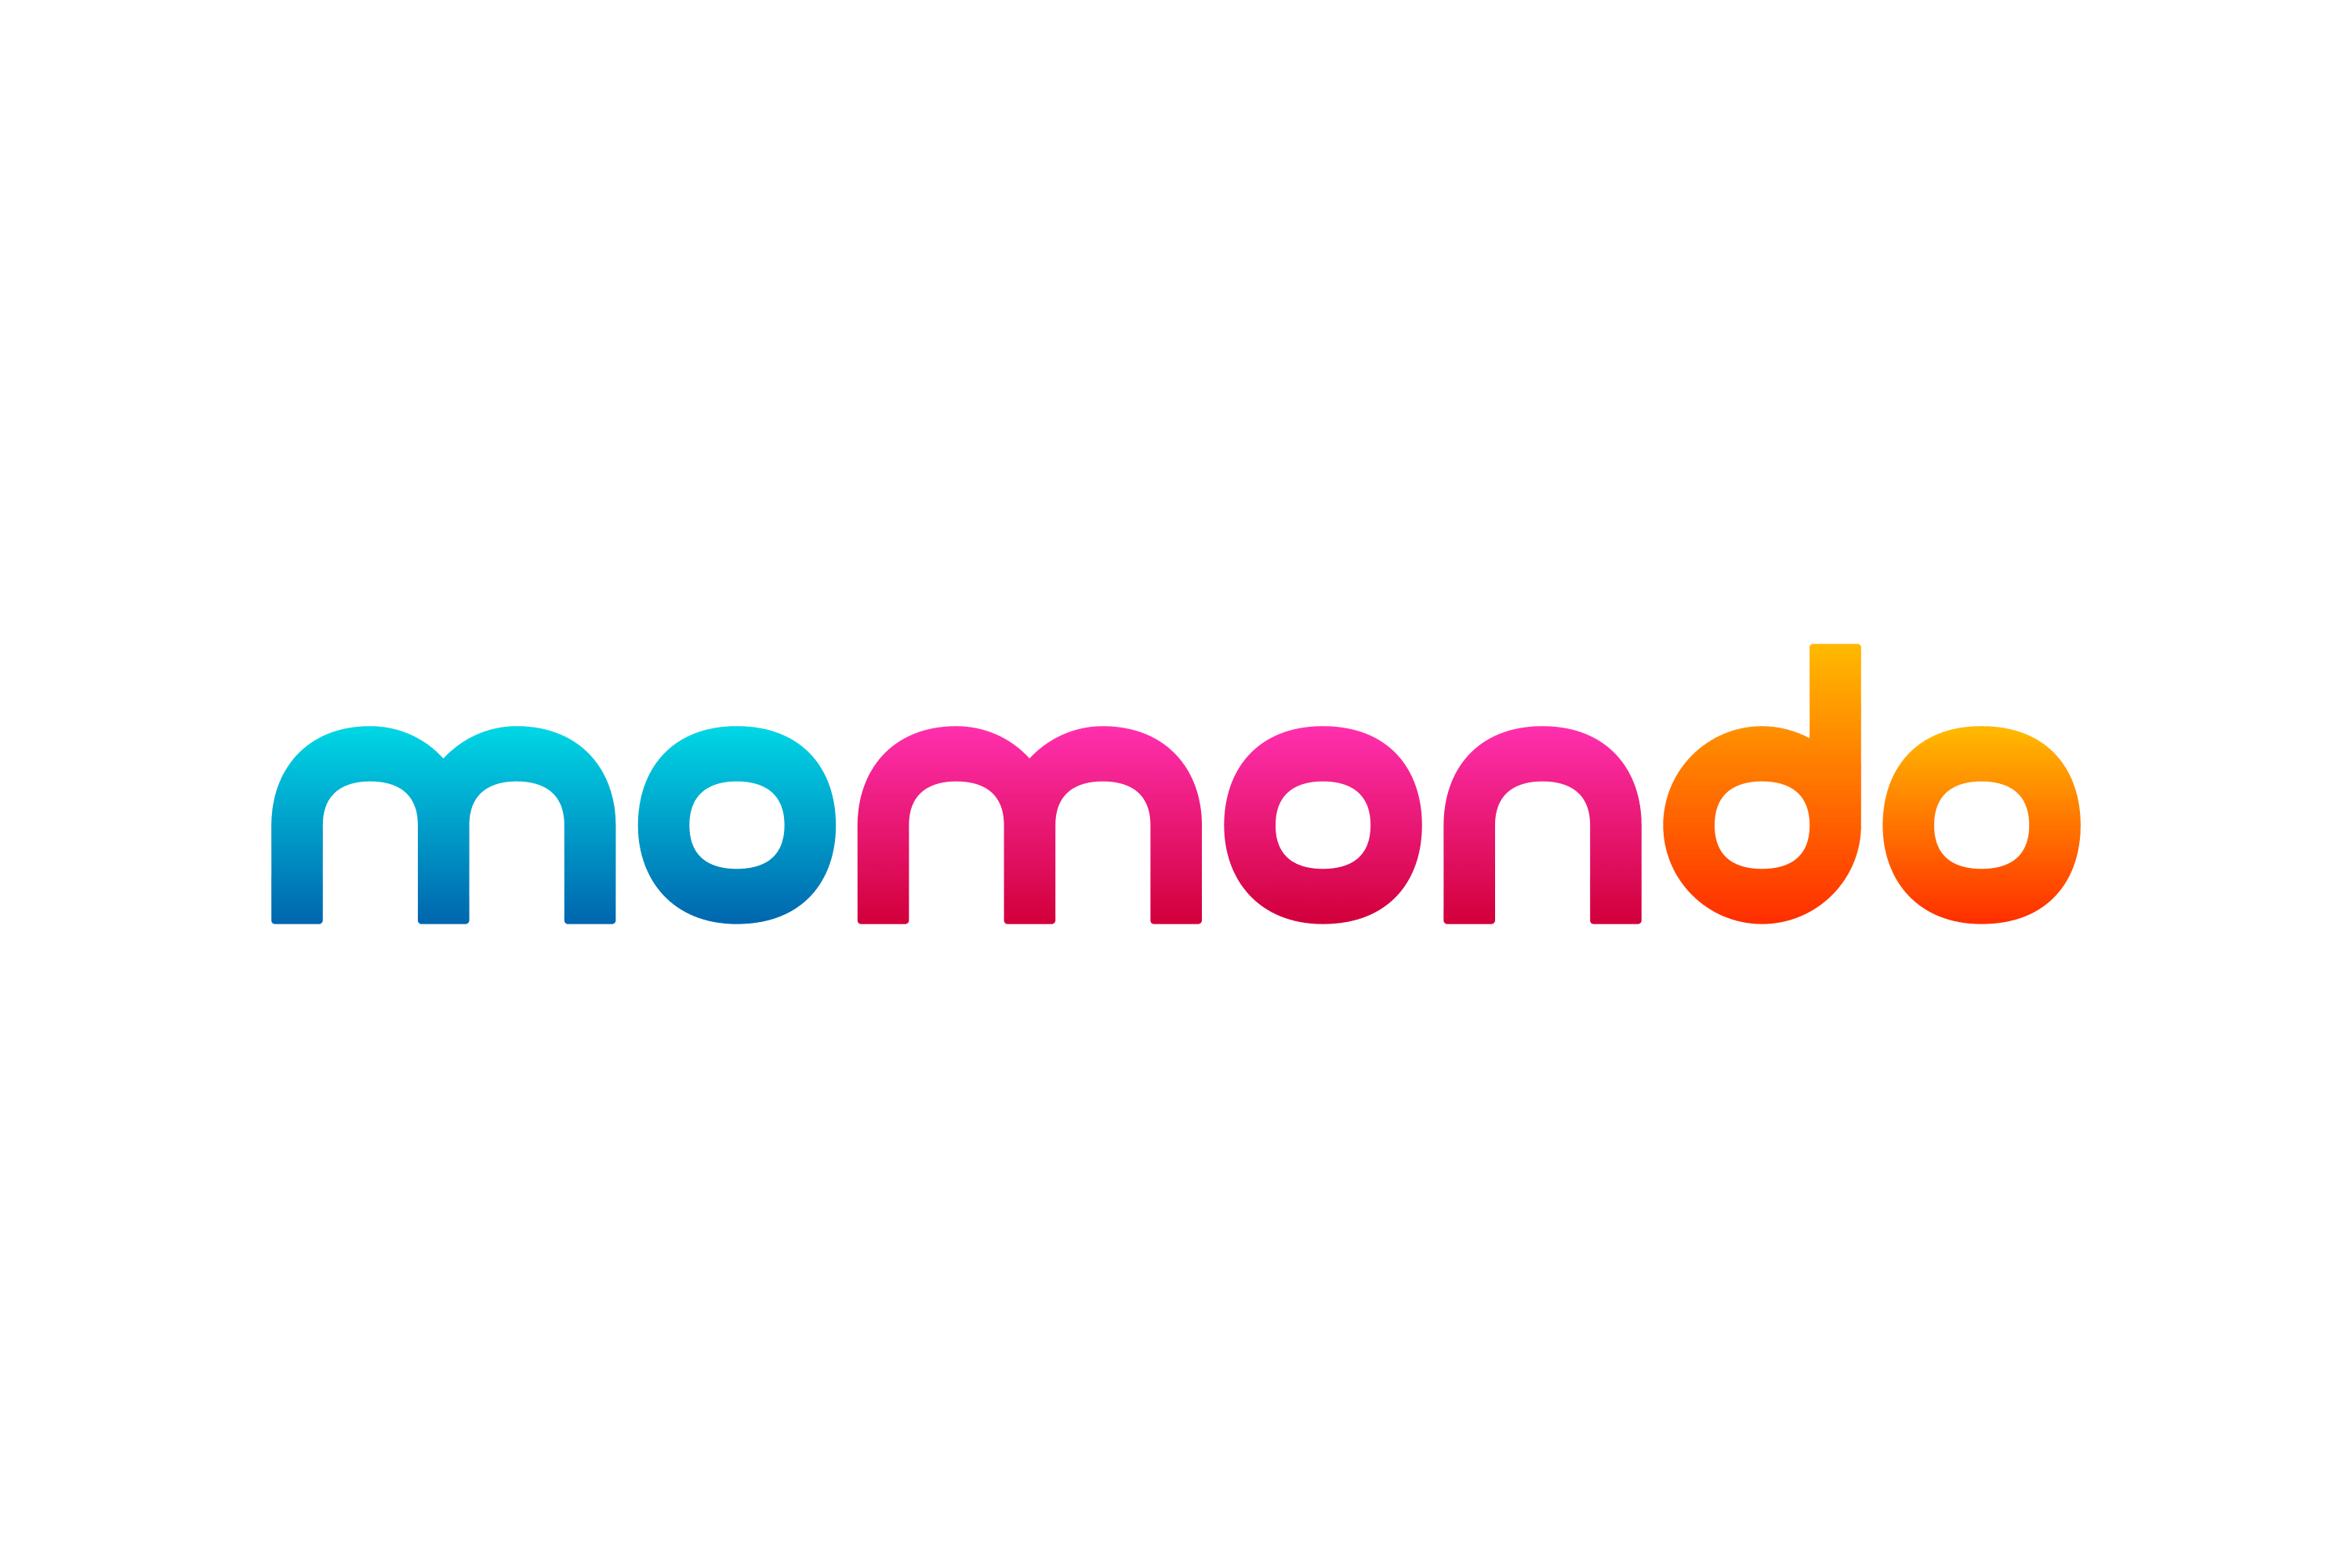 Momondo Coupons